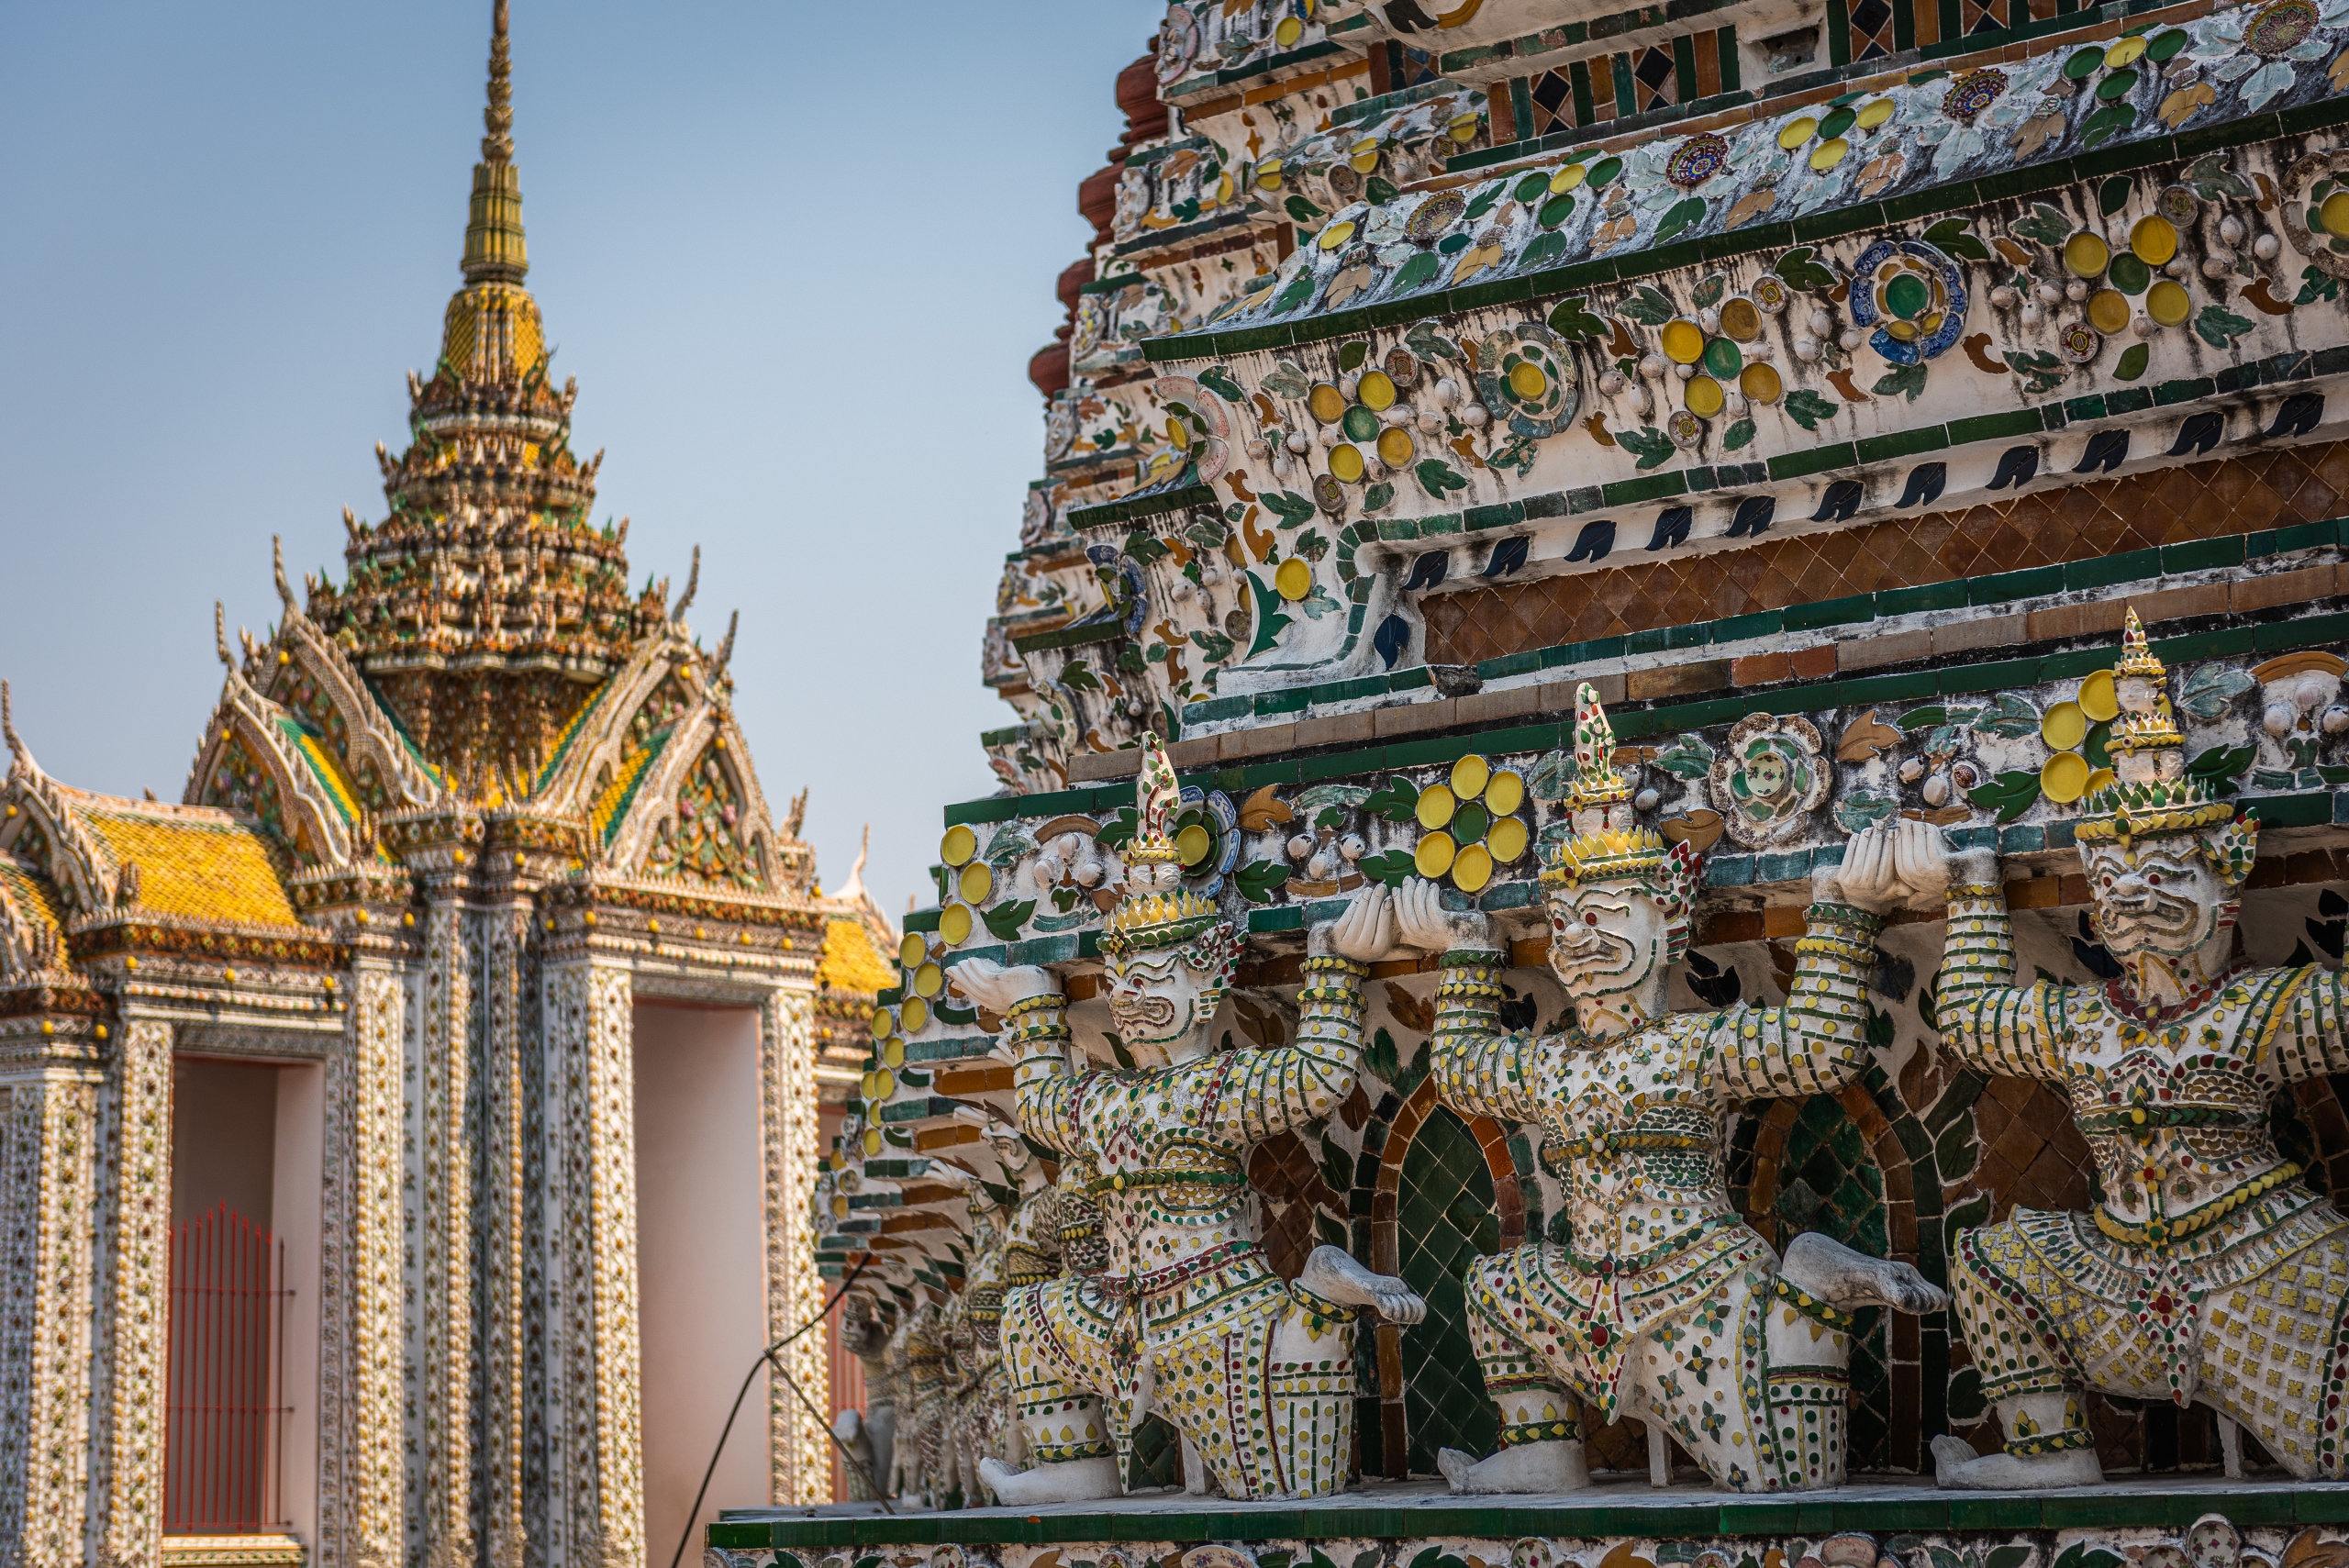 Itinerár na 14 dní po Thajsku - jakšovia a opice v pozadí stúpa chrámu Wat Arun (Chrámu úsvitu)